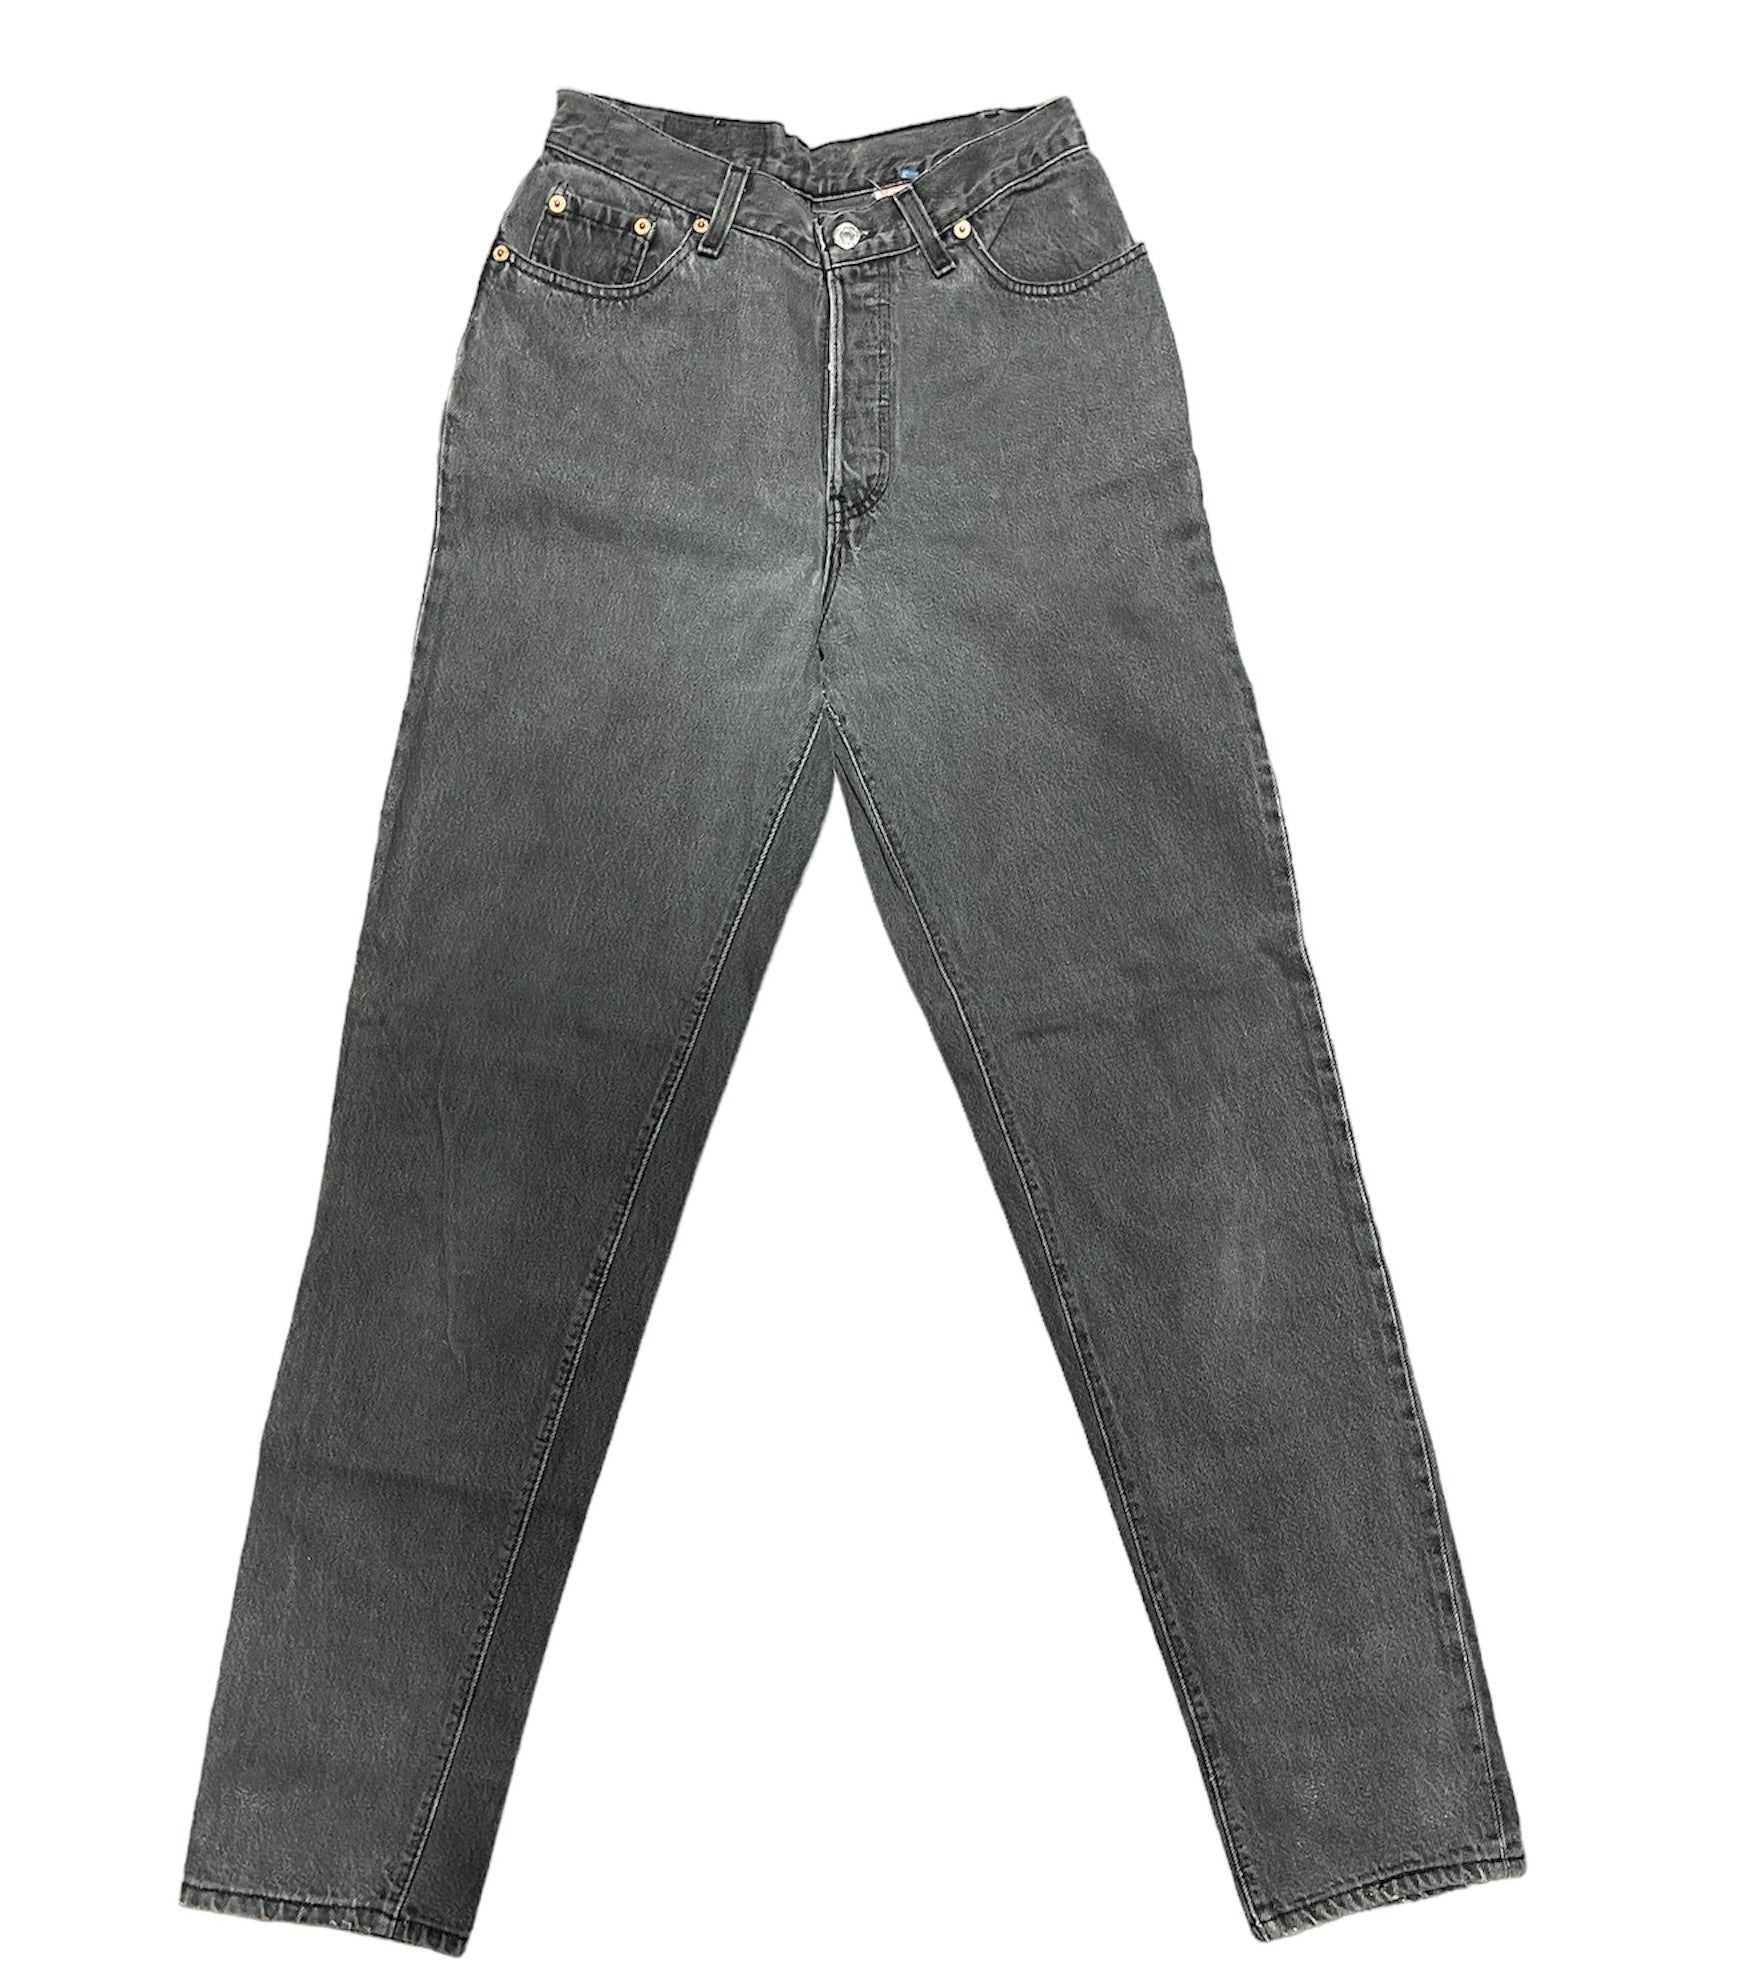 Vintage Levis 501 Vintage Black/Grey Jeans